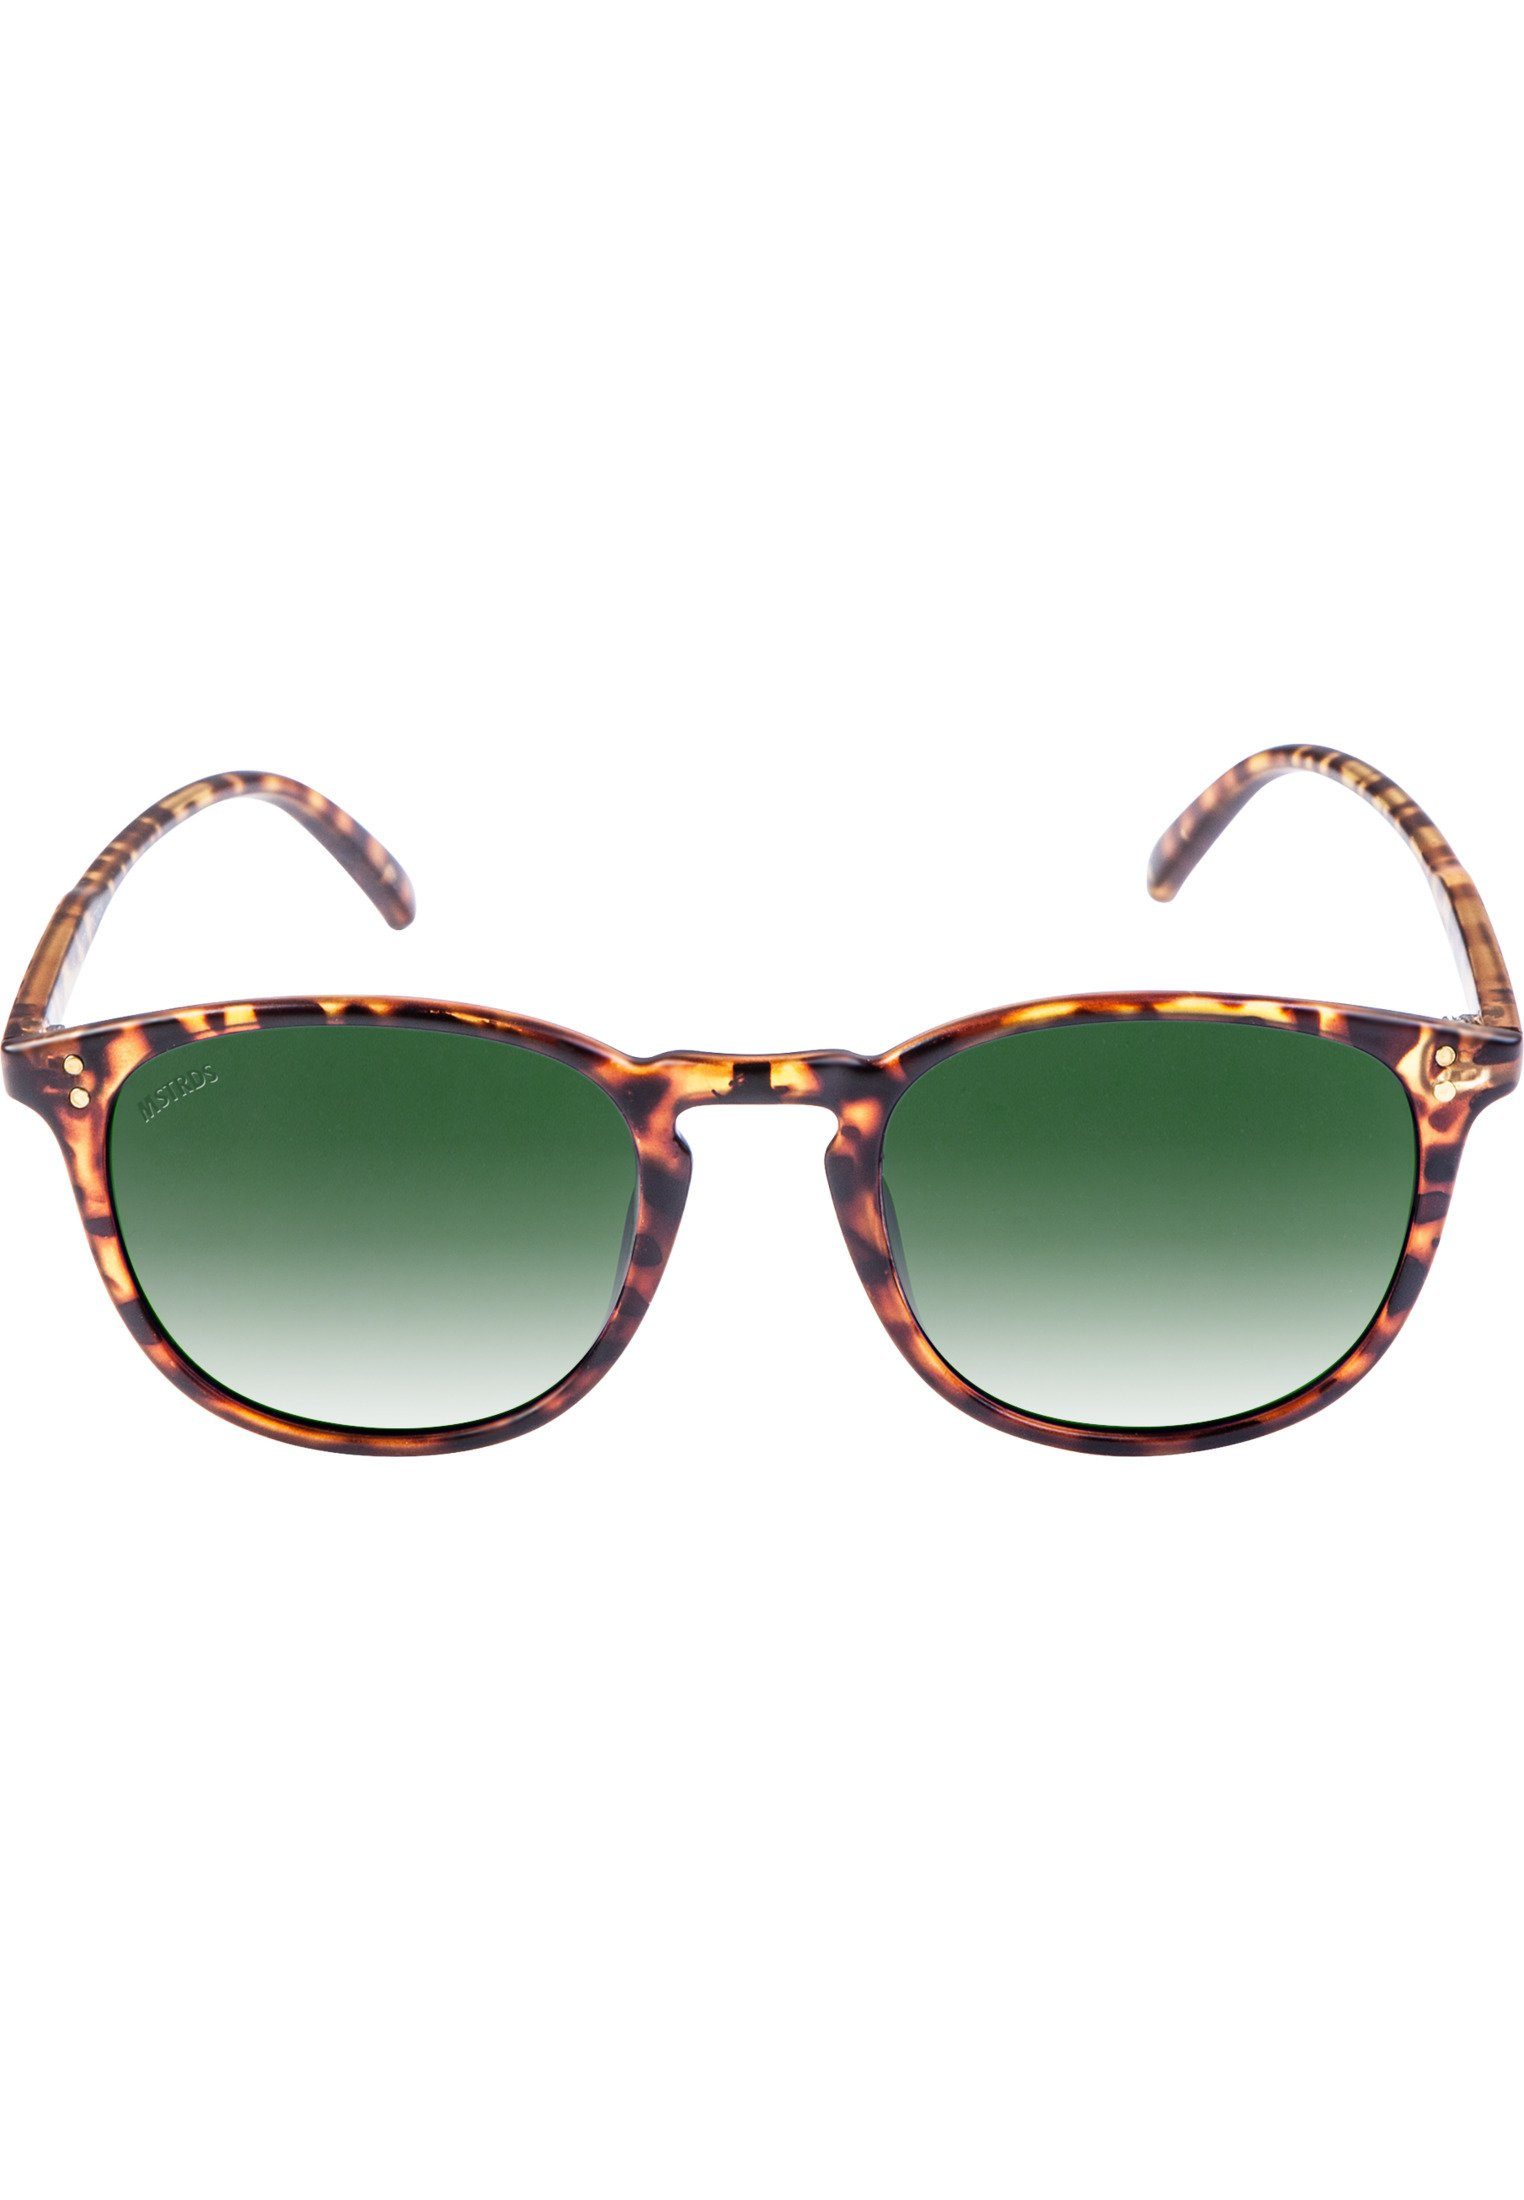 MSTRDS Sonnenbrille Accessoires Sunglasses Arthur Youth, Ideal auch für  Sport im Freien geeignet | Sonnenbrillen